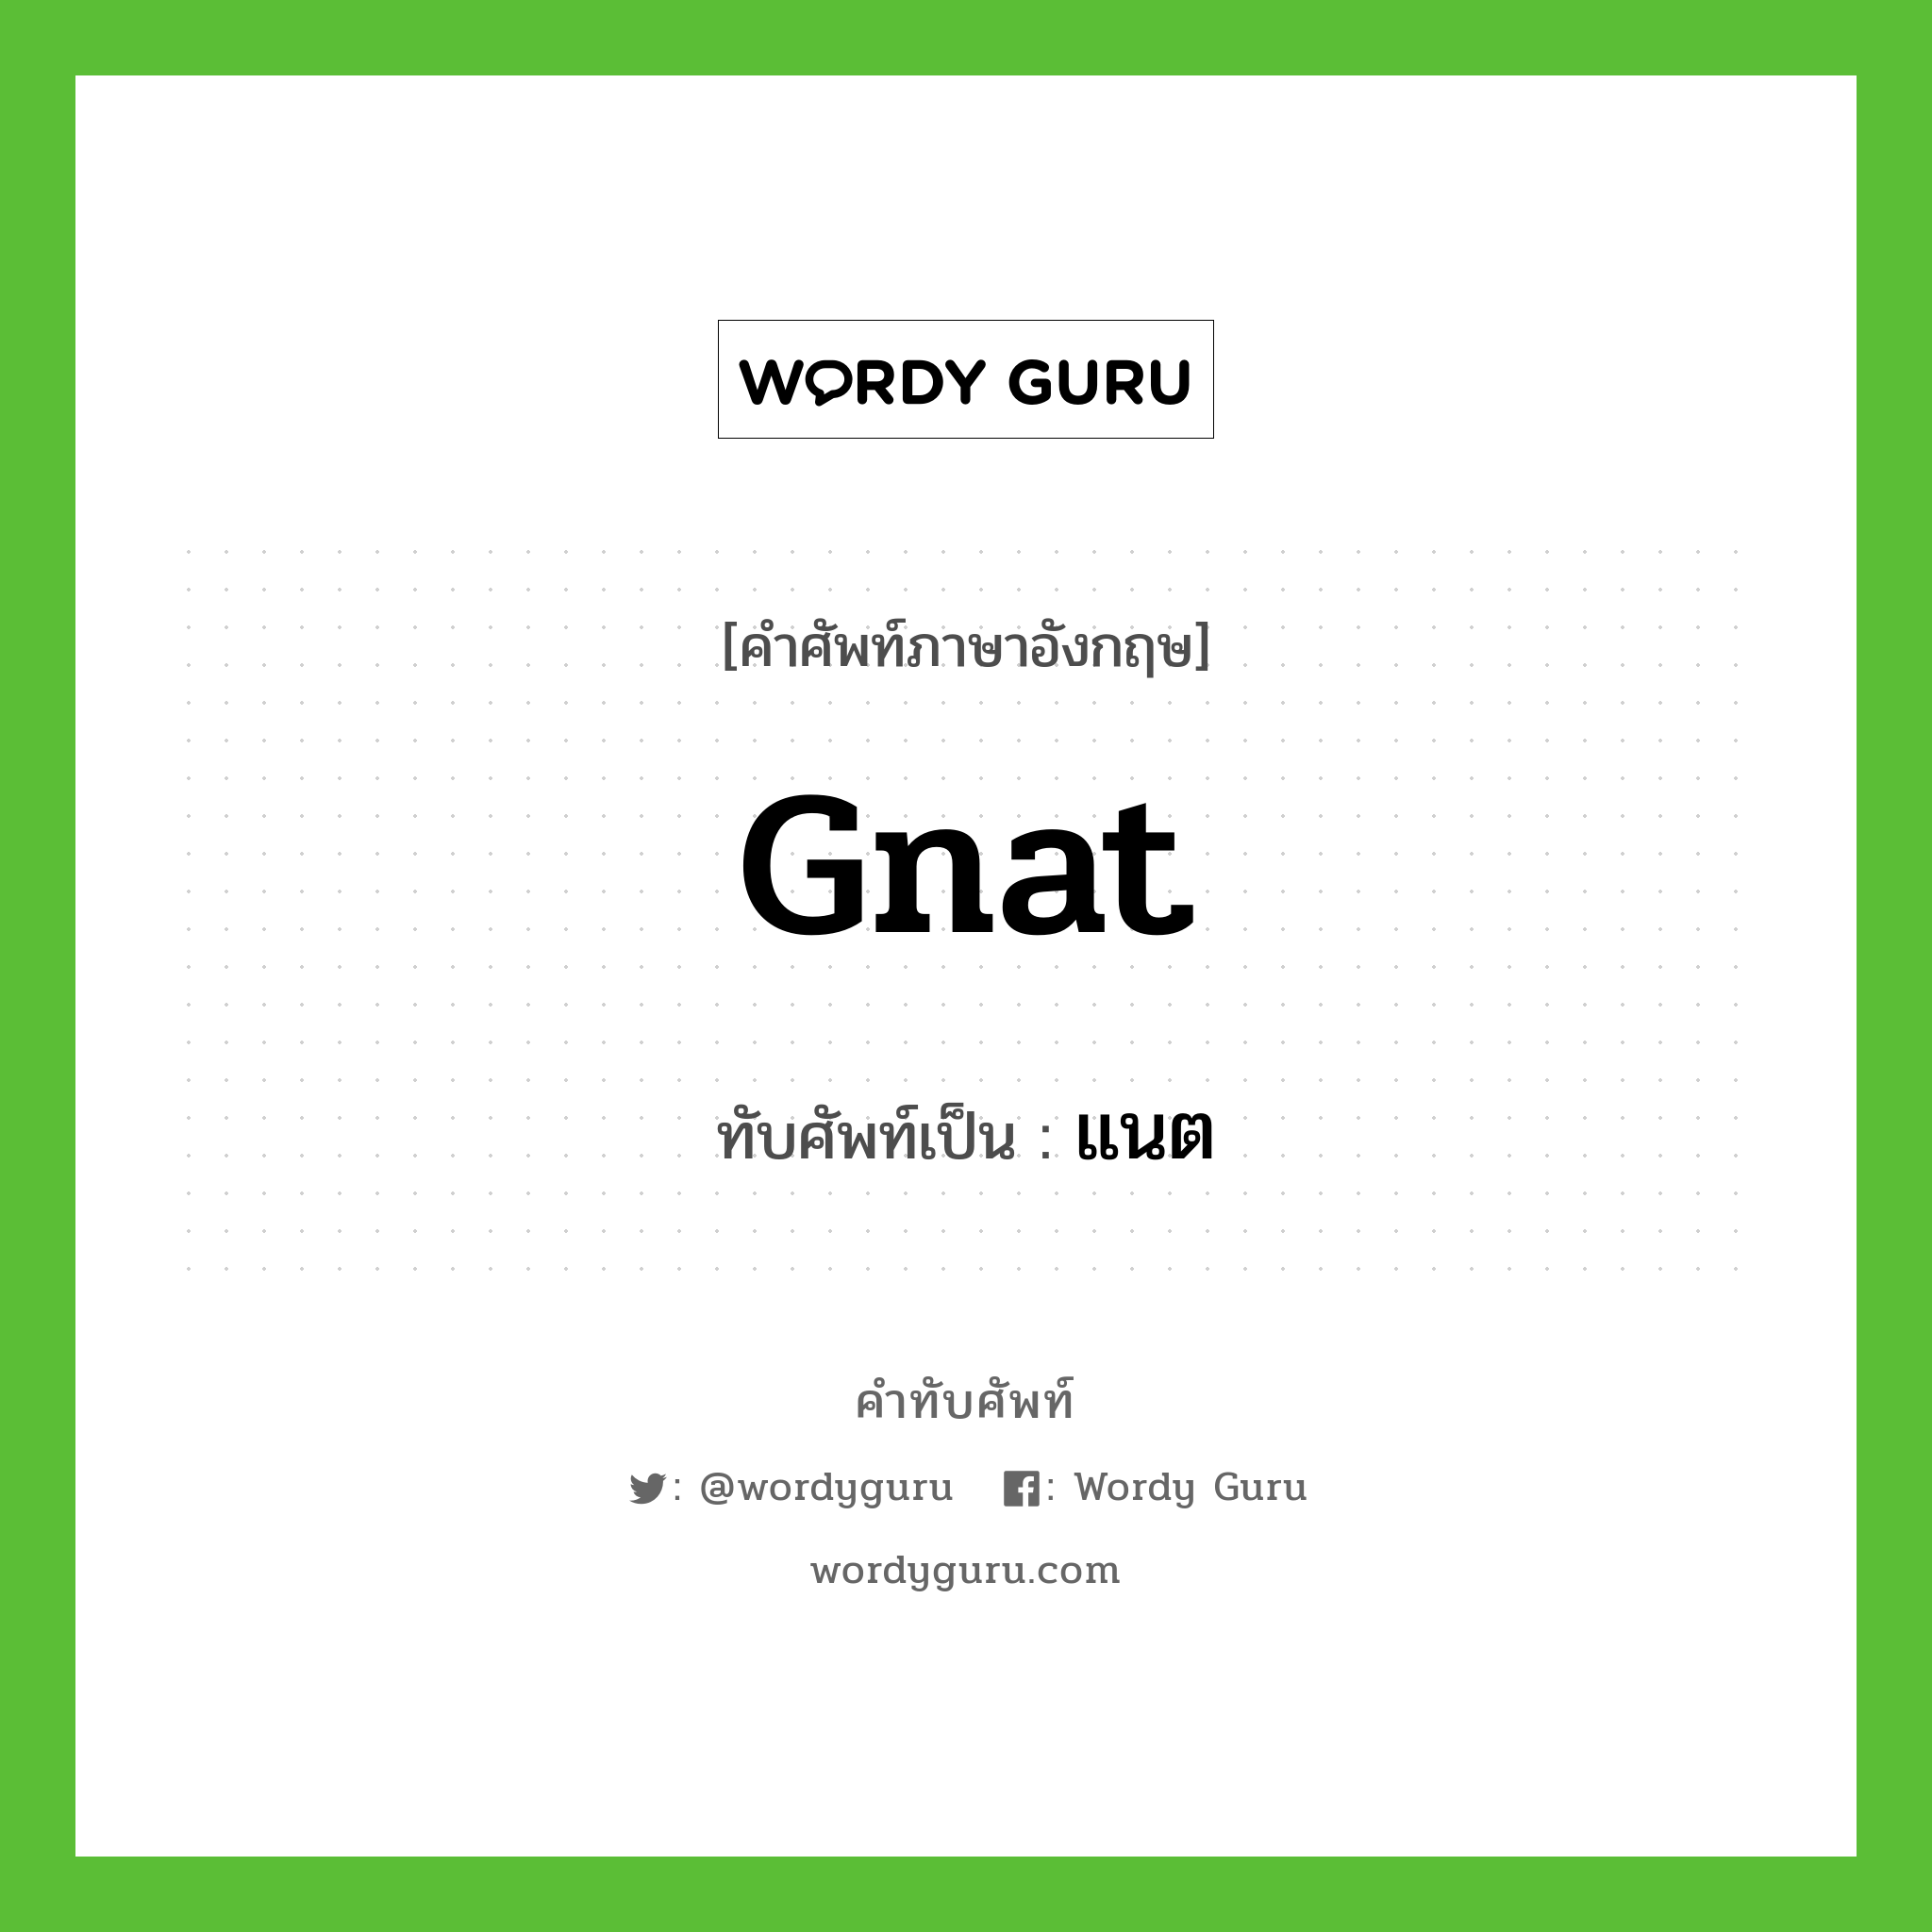 gnat เขียนเป็นคำไทยว่าอะไร?, คำศัพท์ภาษาอังกฤษ gnat ทับศัพท์เป็น แนต